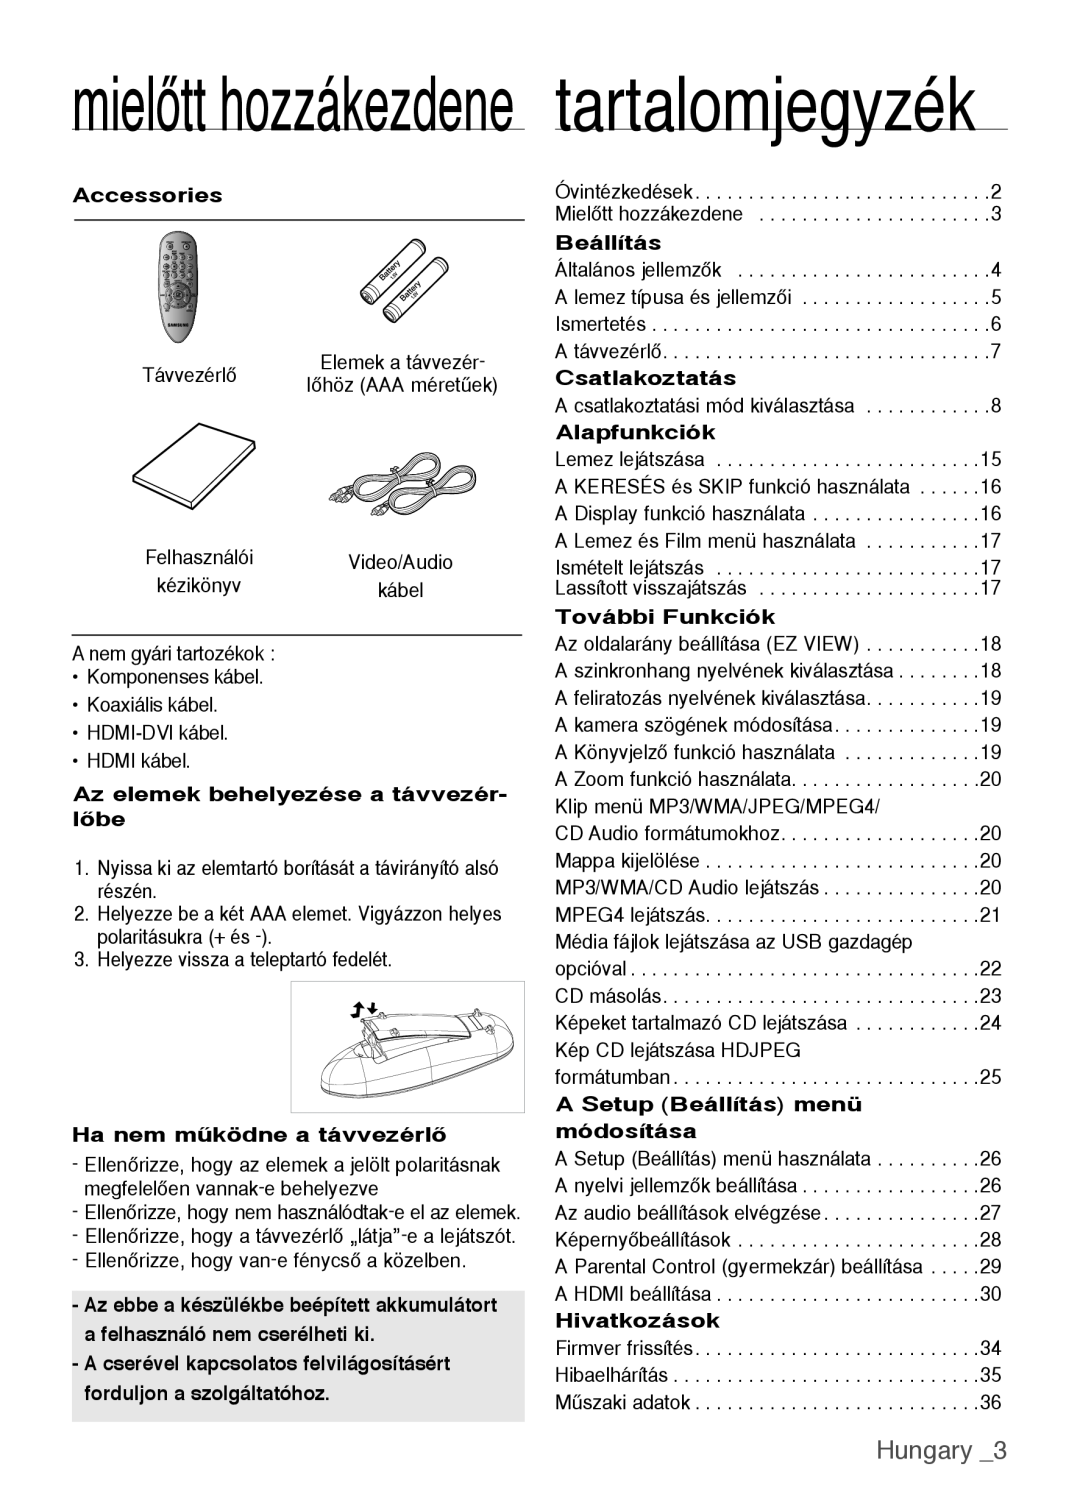 Samsung DVD-H1080W/XEE manual Hungary , mielőtt hozzákezdene tartalomjegyzék, Accessories, Ha nem mıködne a távvezérlŒ 